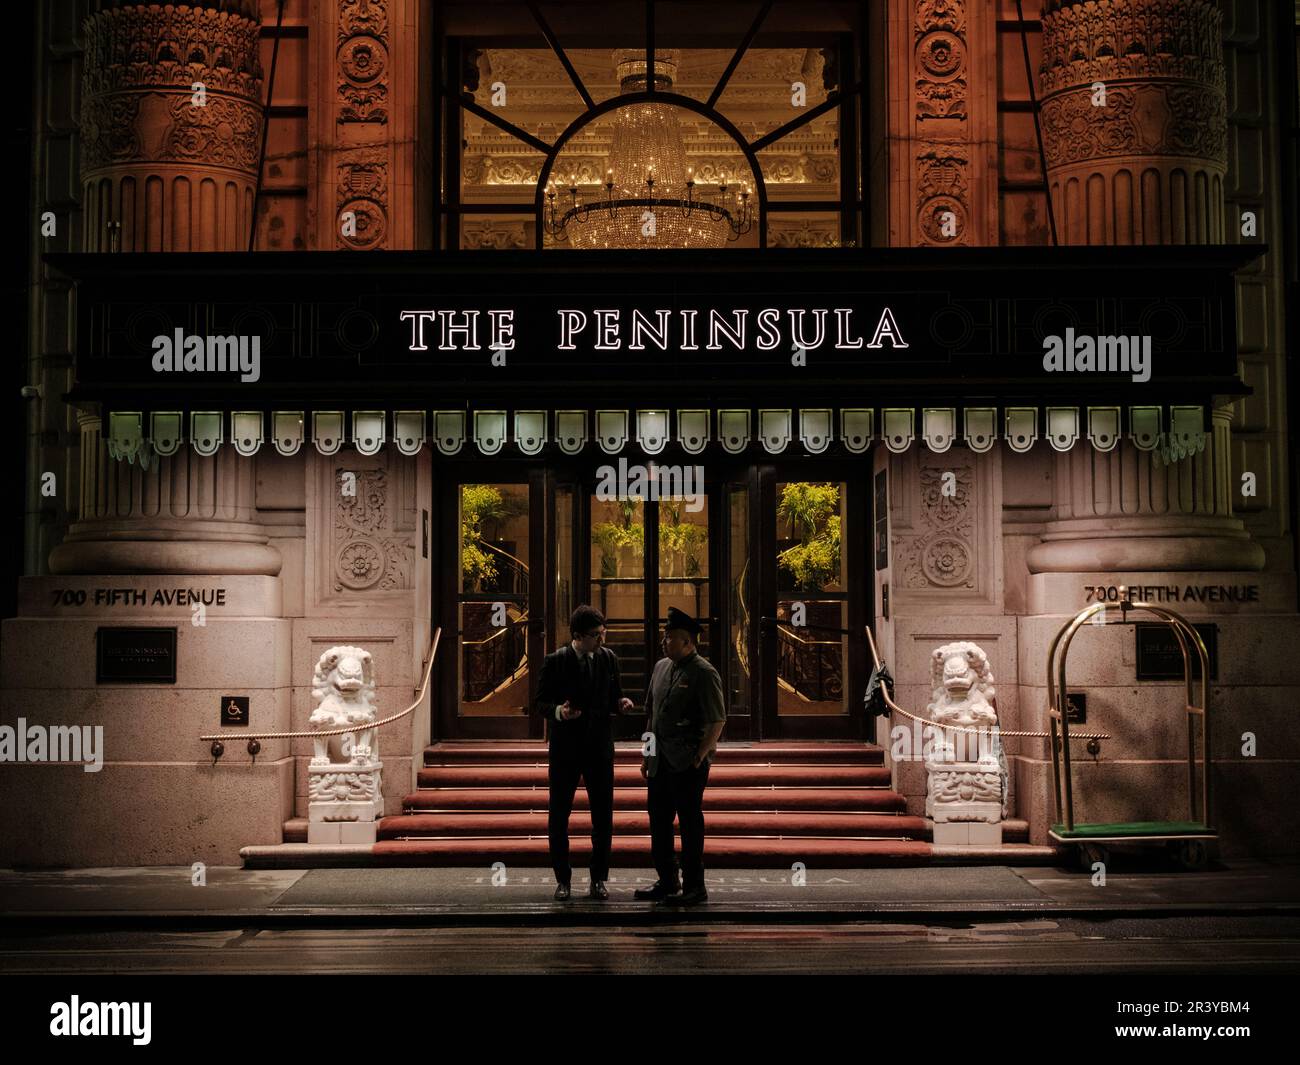 The Peninsula Hotel at night, Manhattan, New York Stock Photo